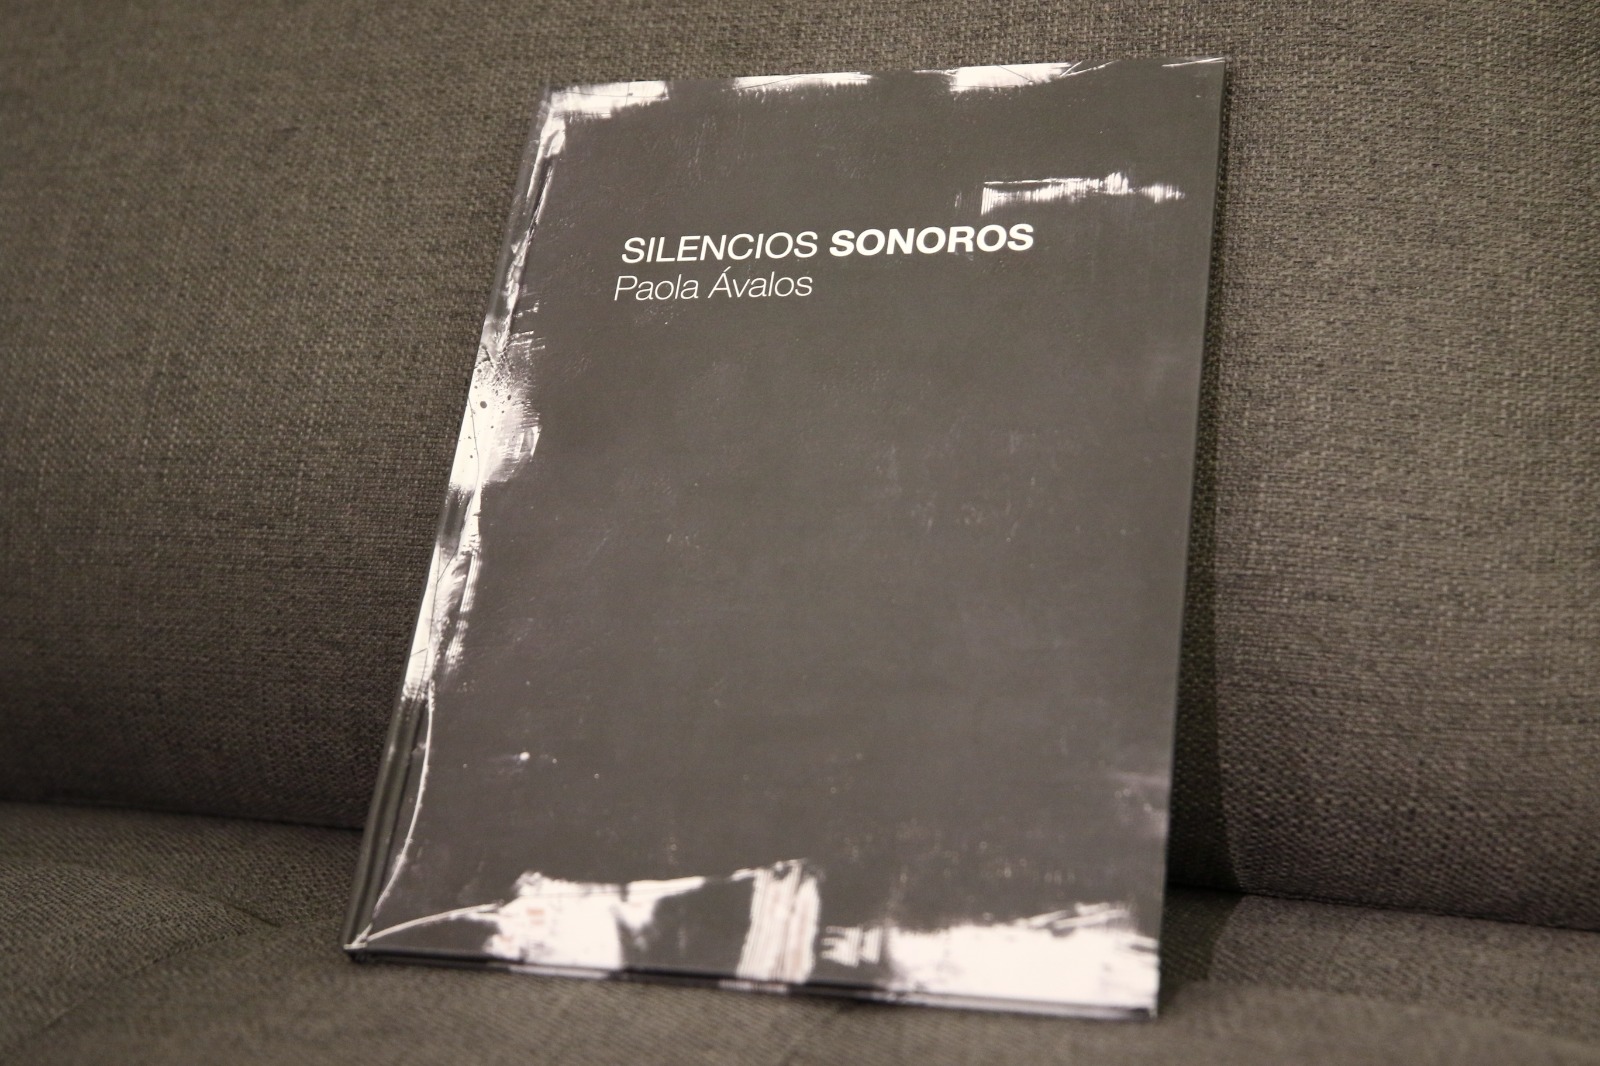 La artista plástica Paola Ávalos presenta su catálogo de la exposición “Silencios sonoros”